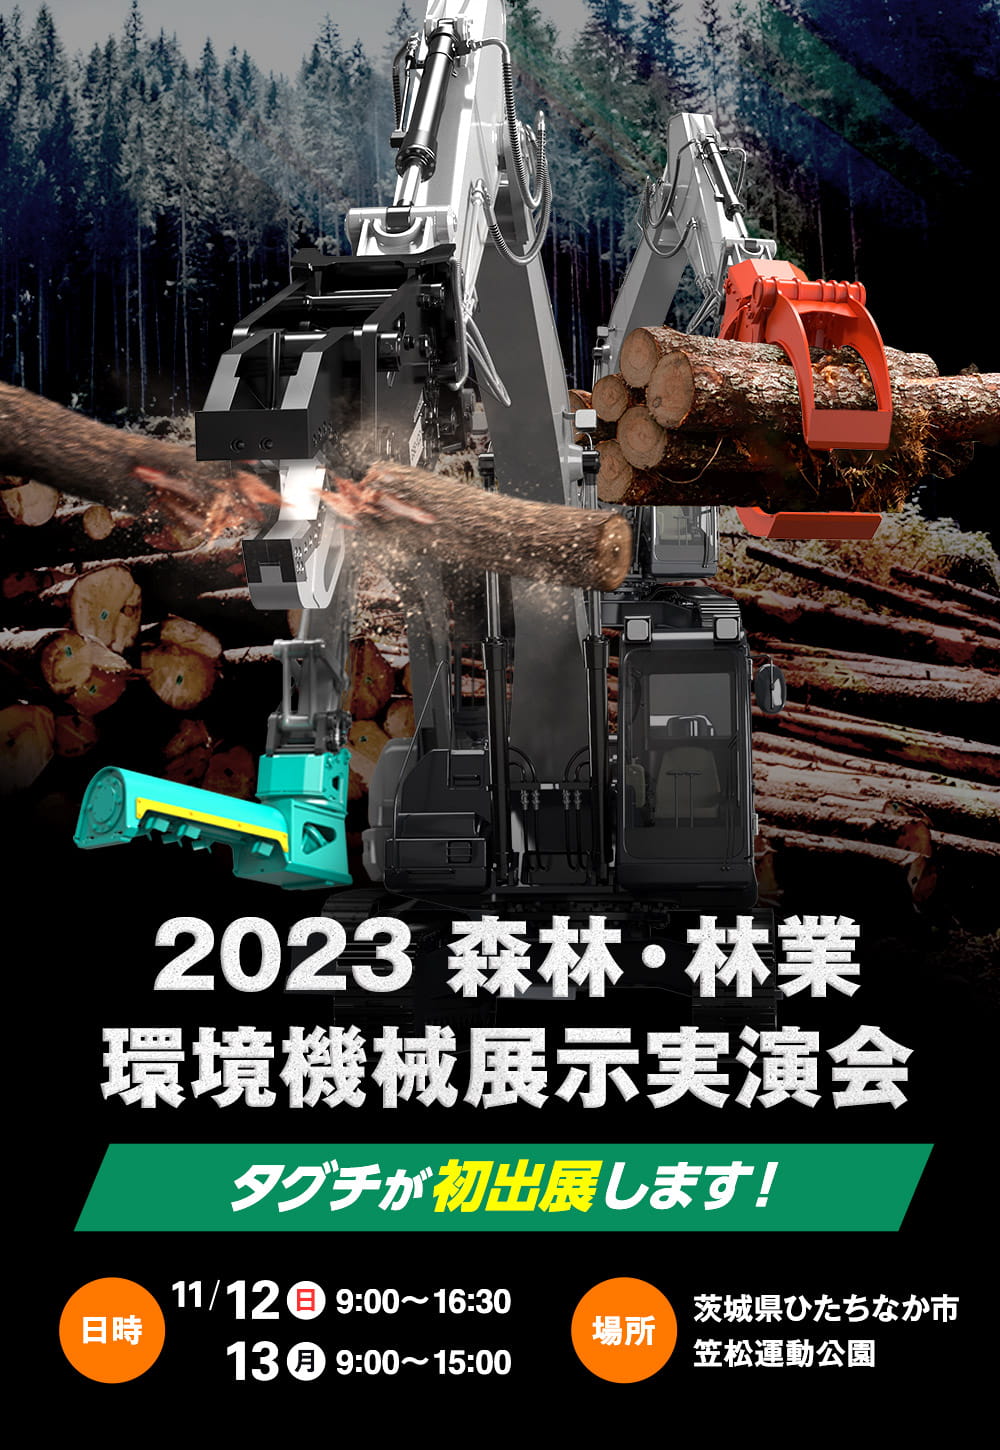 2023 森林・林業・環境機械展示実演会にタグチが初出展します！